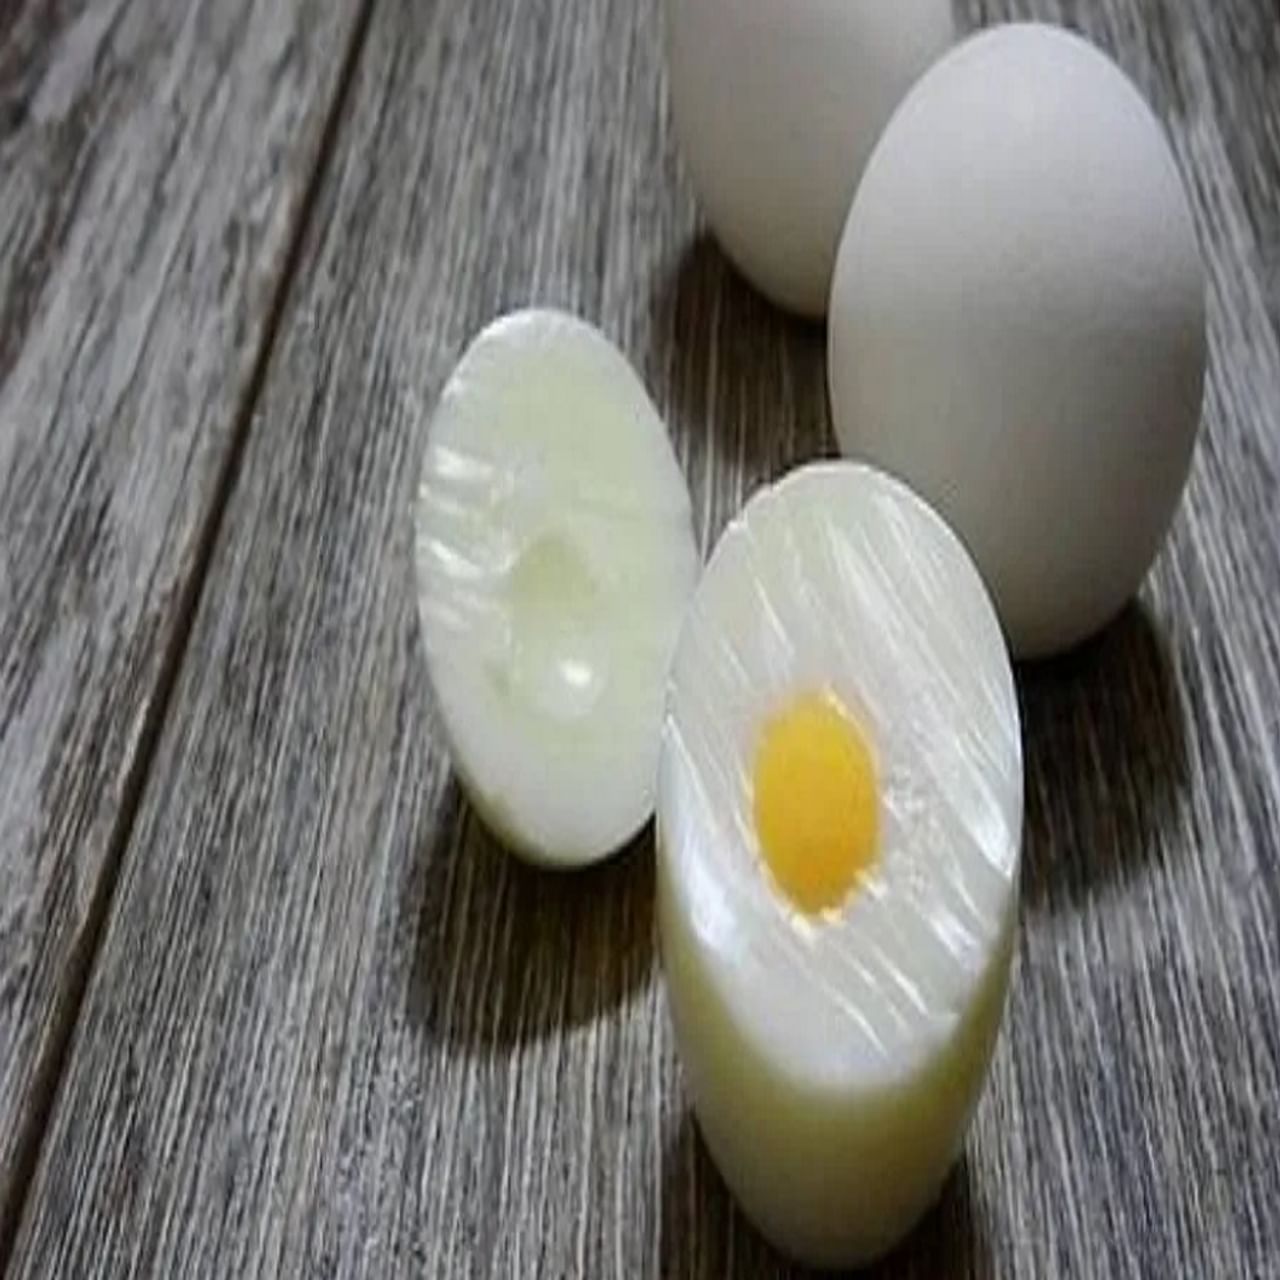 अंडीमध्ये ल्युटीन, सिस्टीन आणि व्हिटॅमिन बी 2 सारख्या आवश्यक पोषक तत्वांचा समावेश असतो. जर तुम्ही नॉनव्हेज खात असाल तर रोज एक ते दोन उकडलेली अंडी नक्कीच खा.